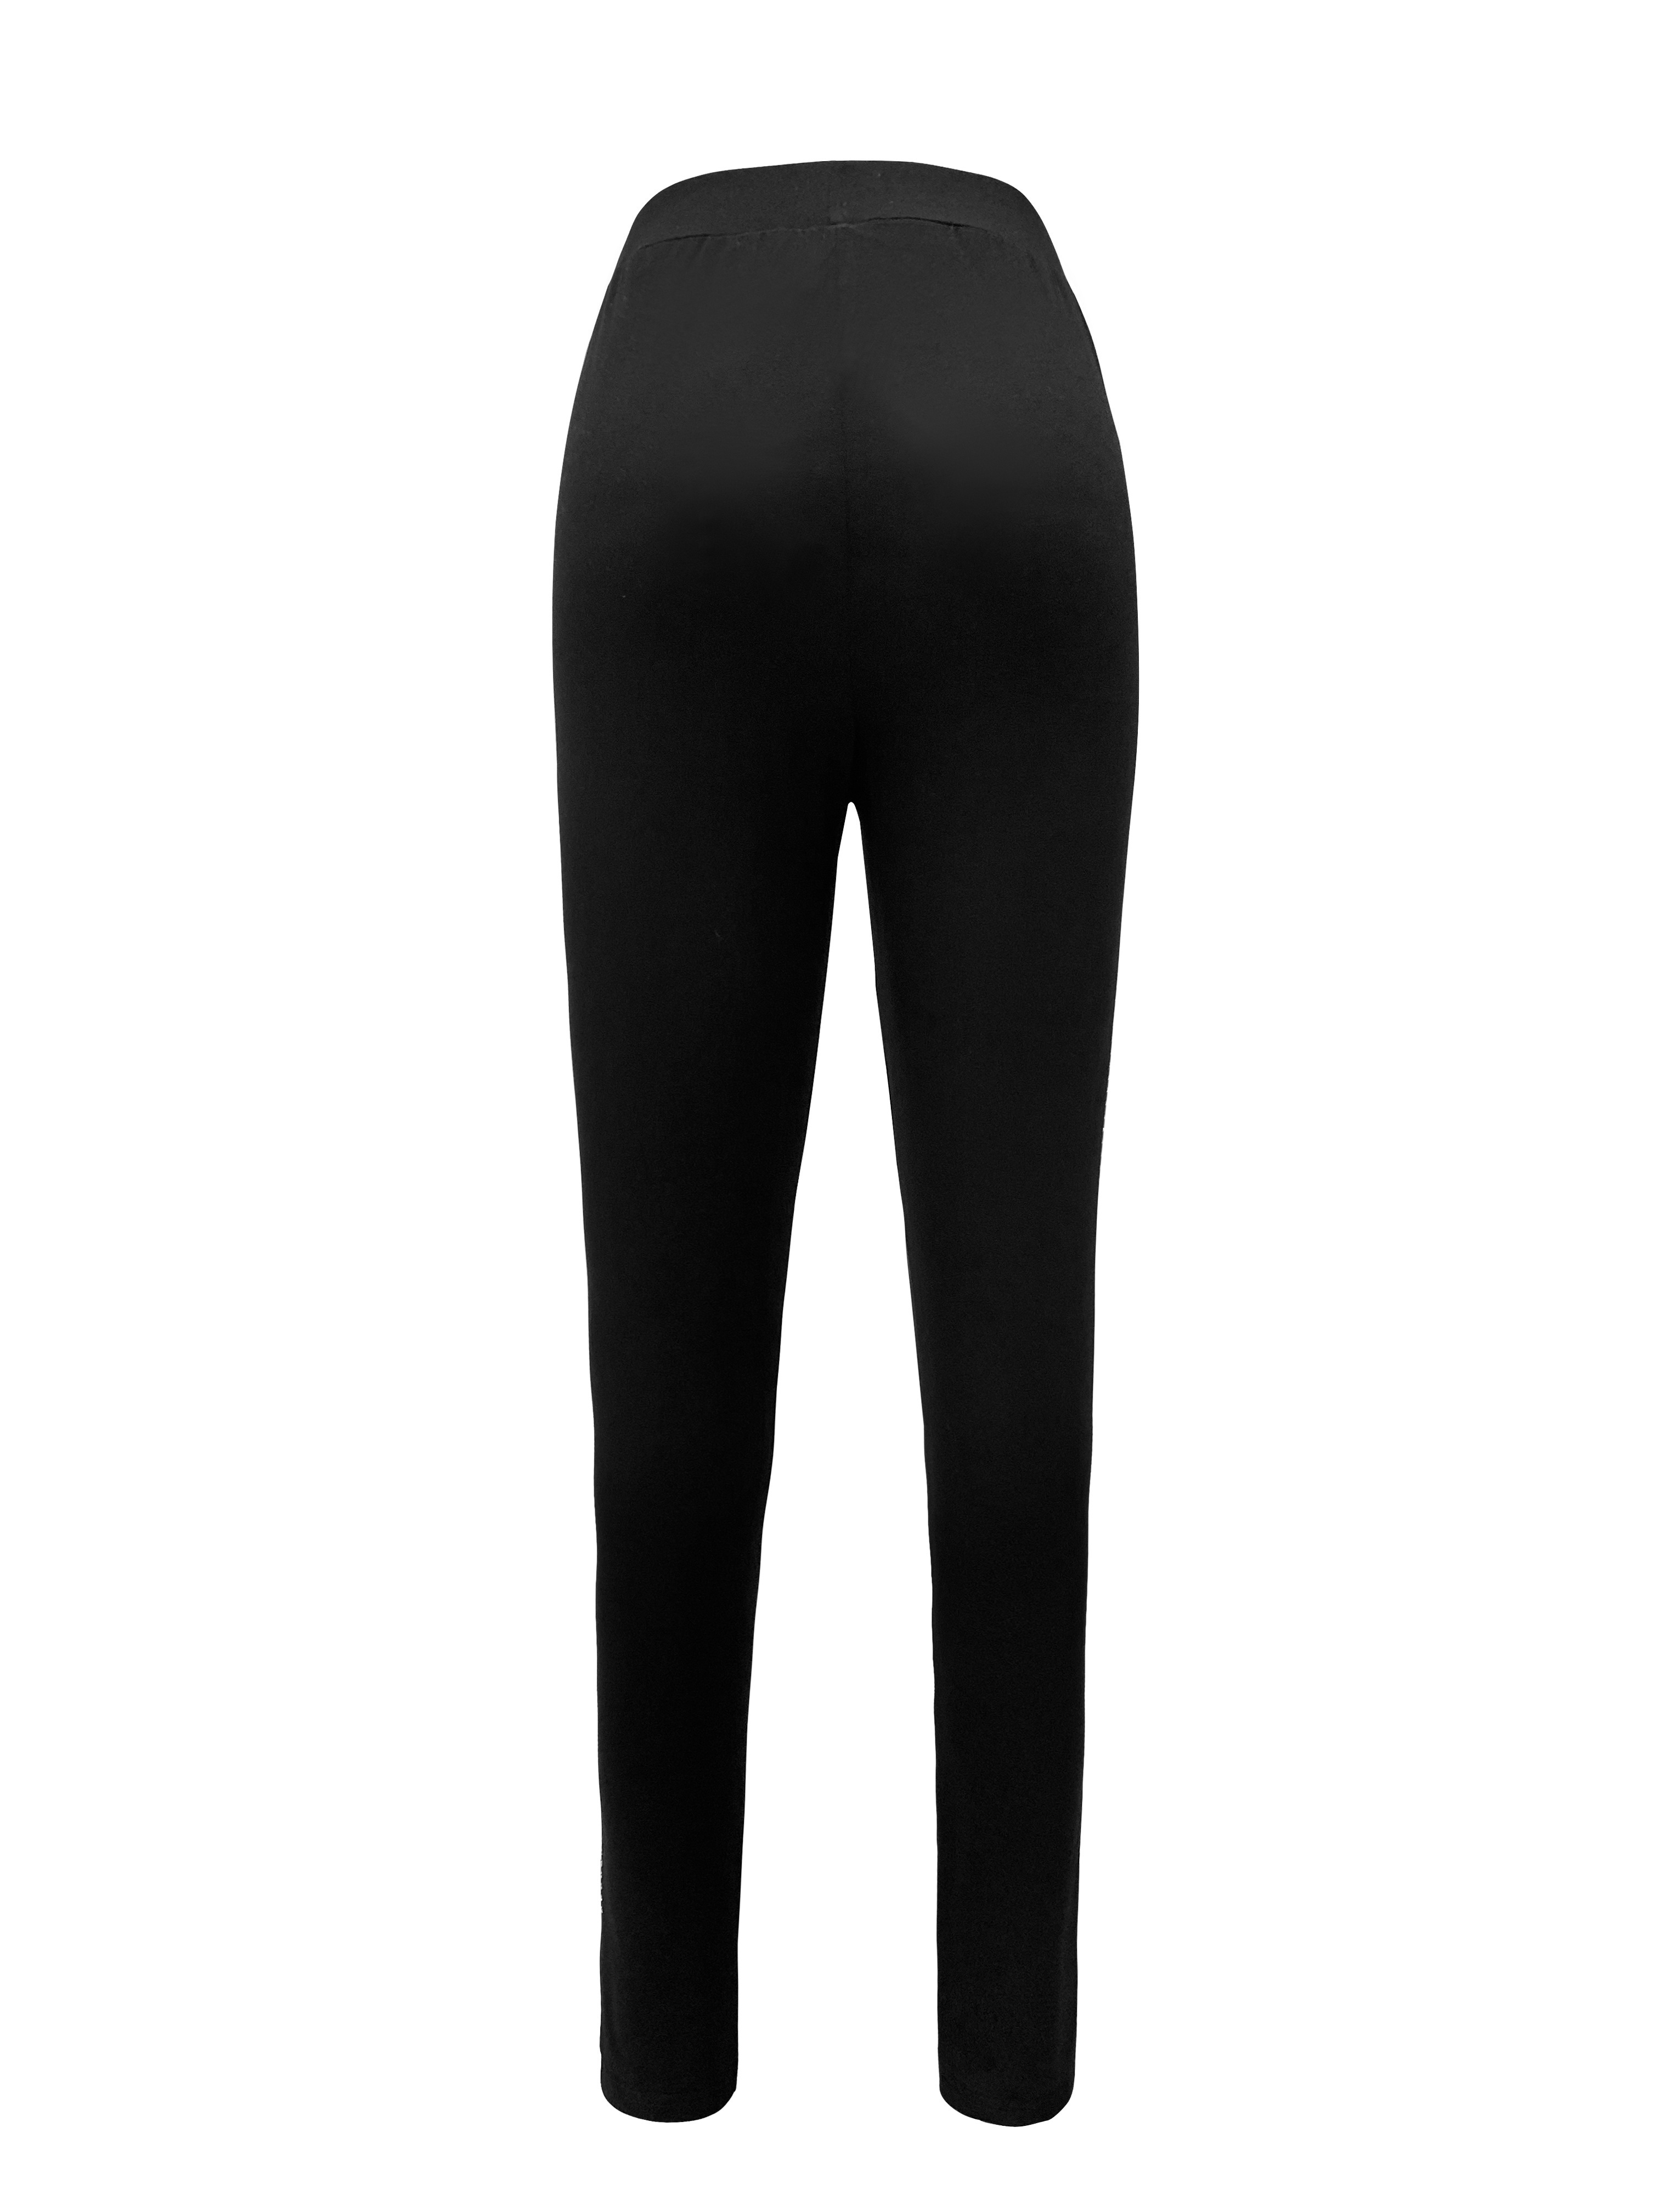 Rhinestone-detail leggings - Black - Ladies